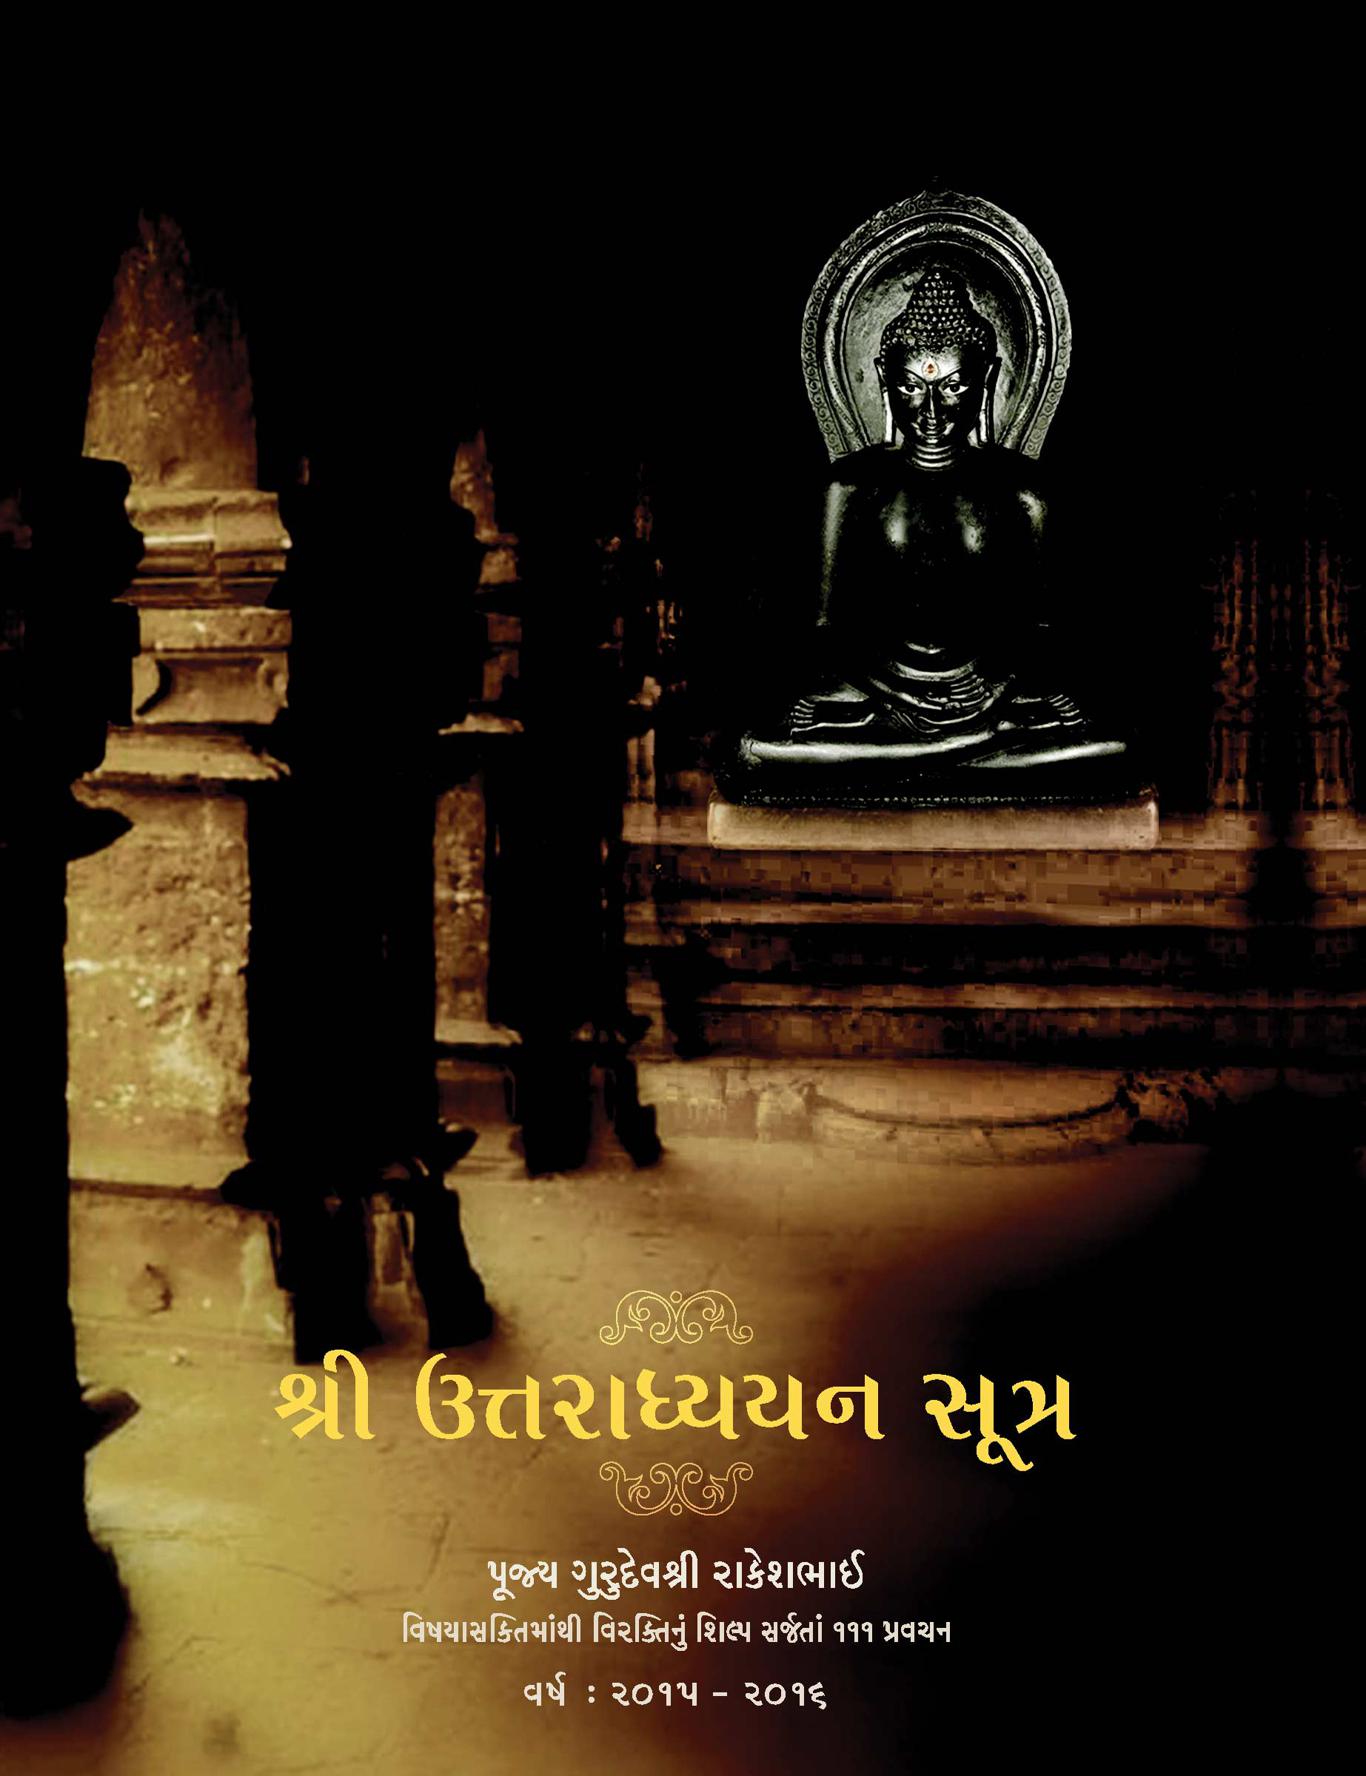 Shri Uttaradhyayan Sutra